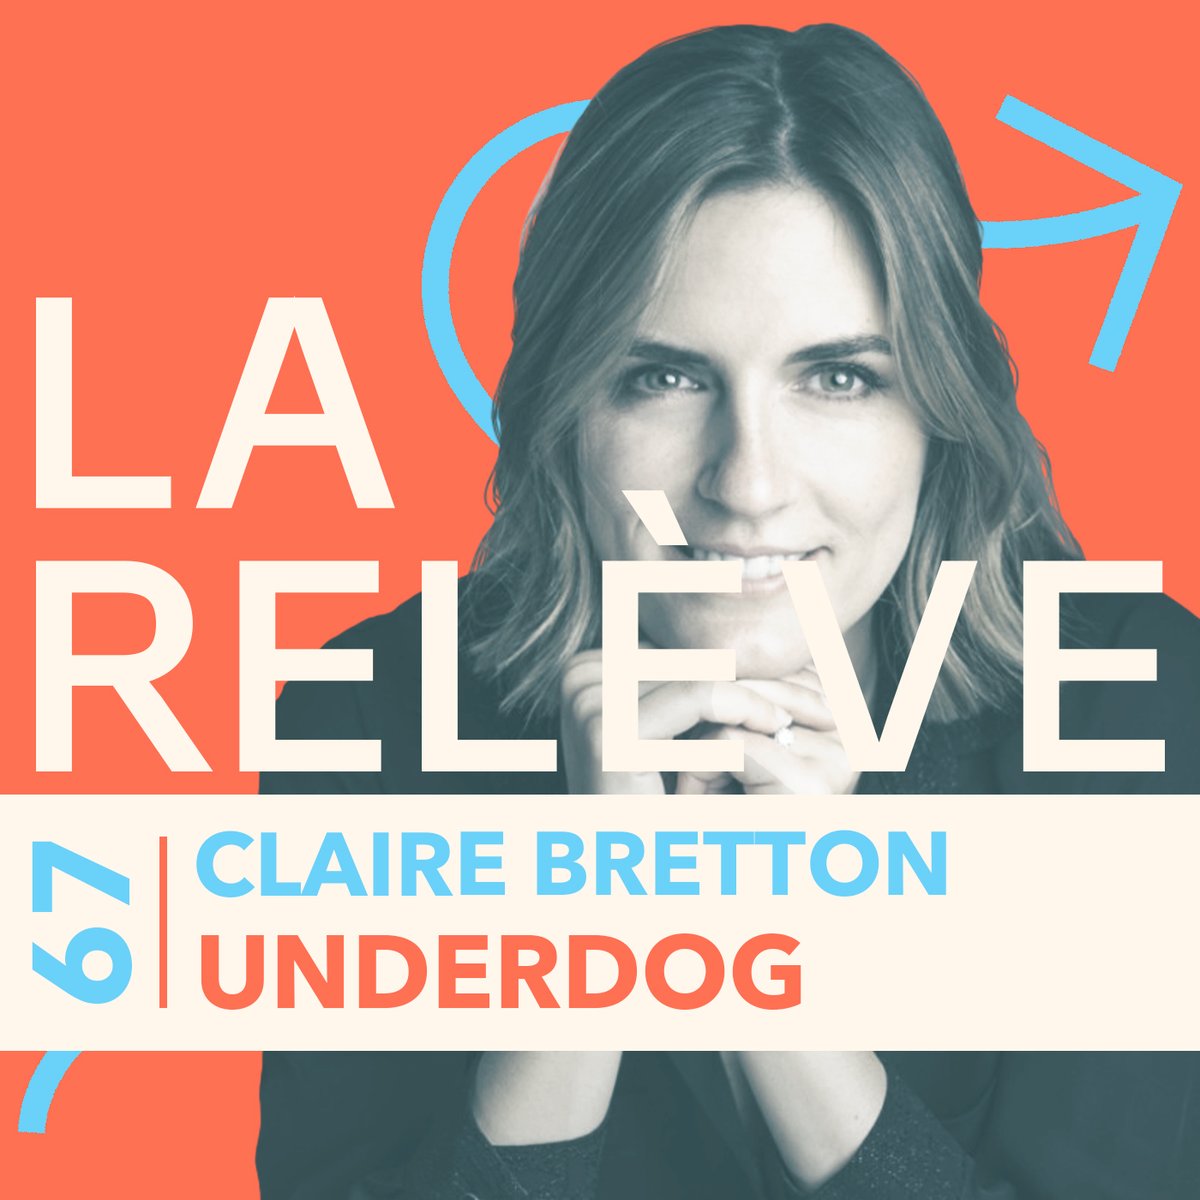 Pour le nouvel épisode de 'La Relève', @thiblam reçoit Claire Bretton, cofondatrice de Underdog, le #spécialiste de l'#électroménager #reconditionné. 👉 Lien du #podcast : audmns.com/hmGRupL